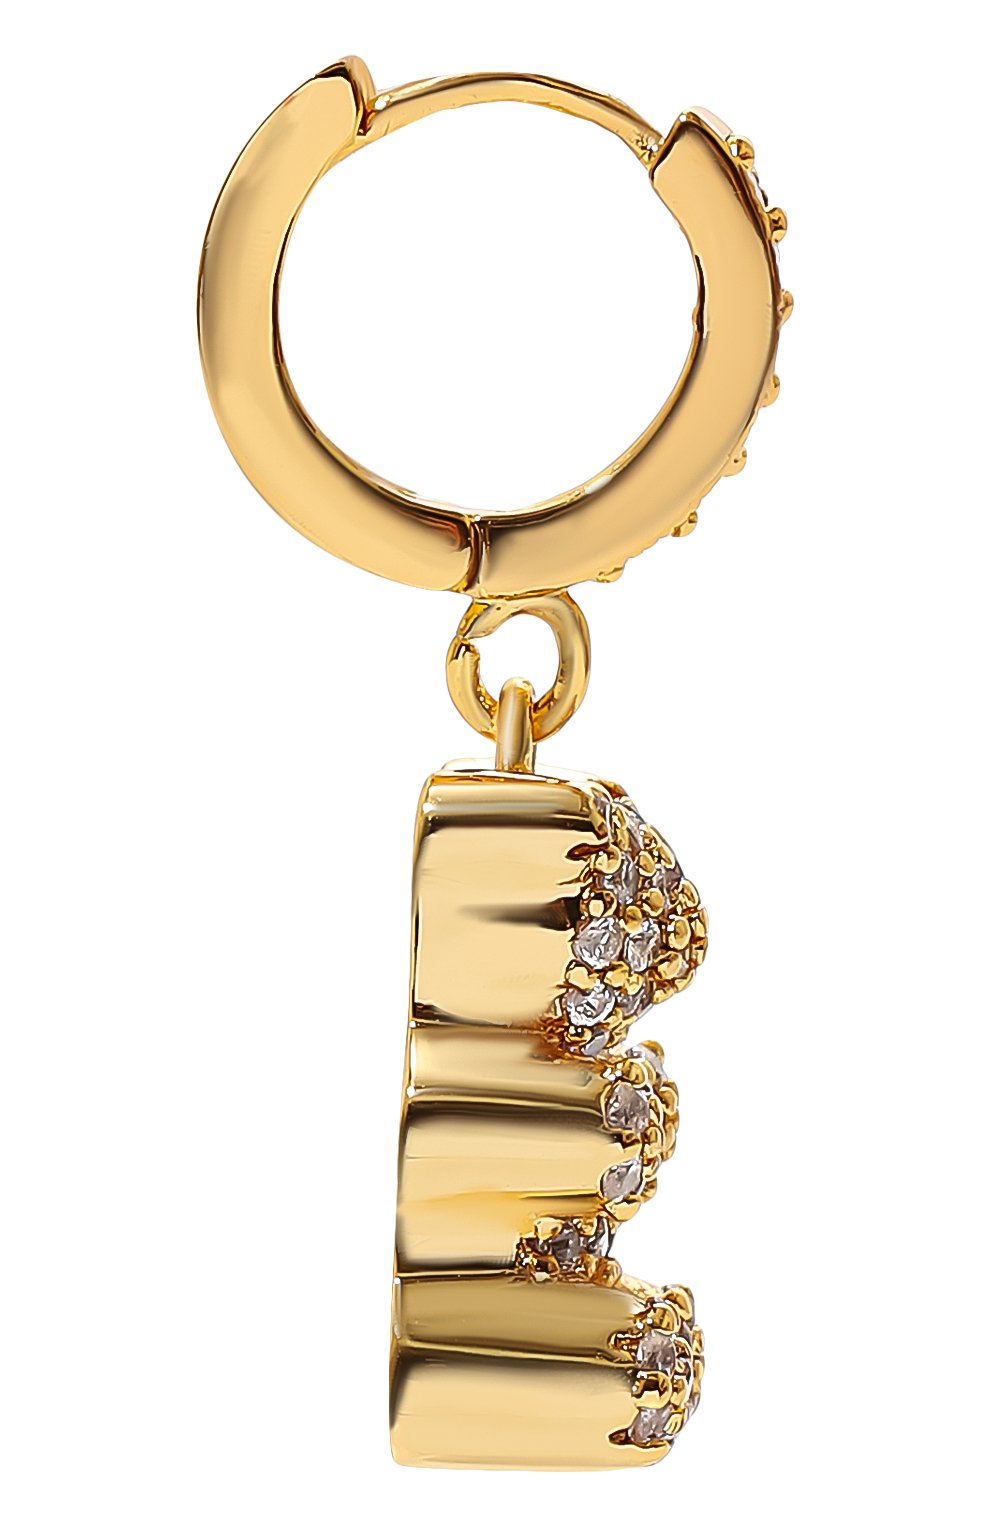 Женская золотая моносерьга CRYSTAL HAZE купить в интернет-магазине ЦУМ,арт. PAVE N0STALGIA BEAR H00P